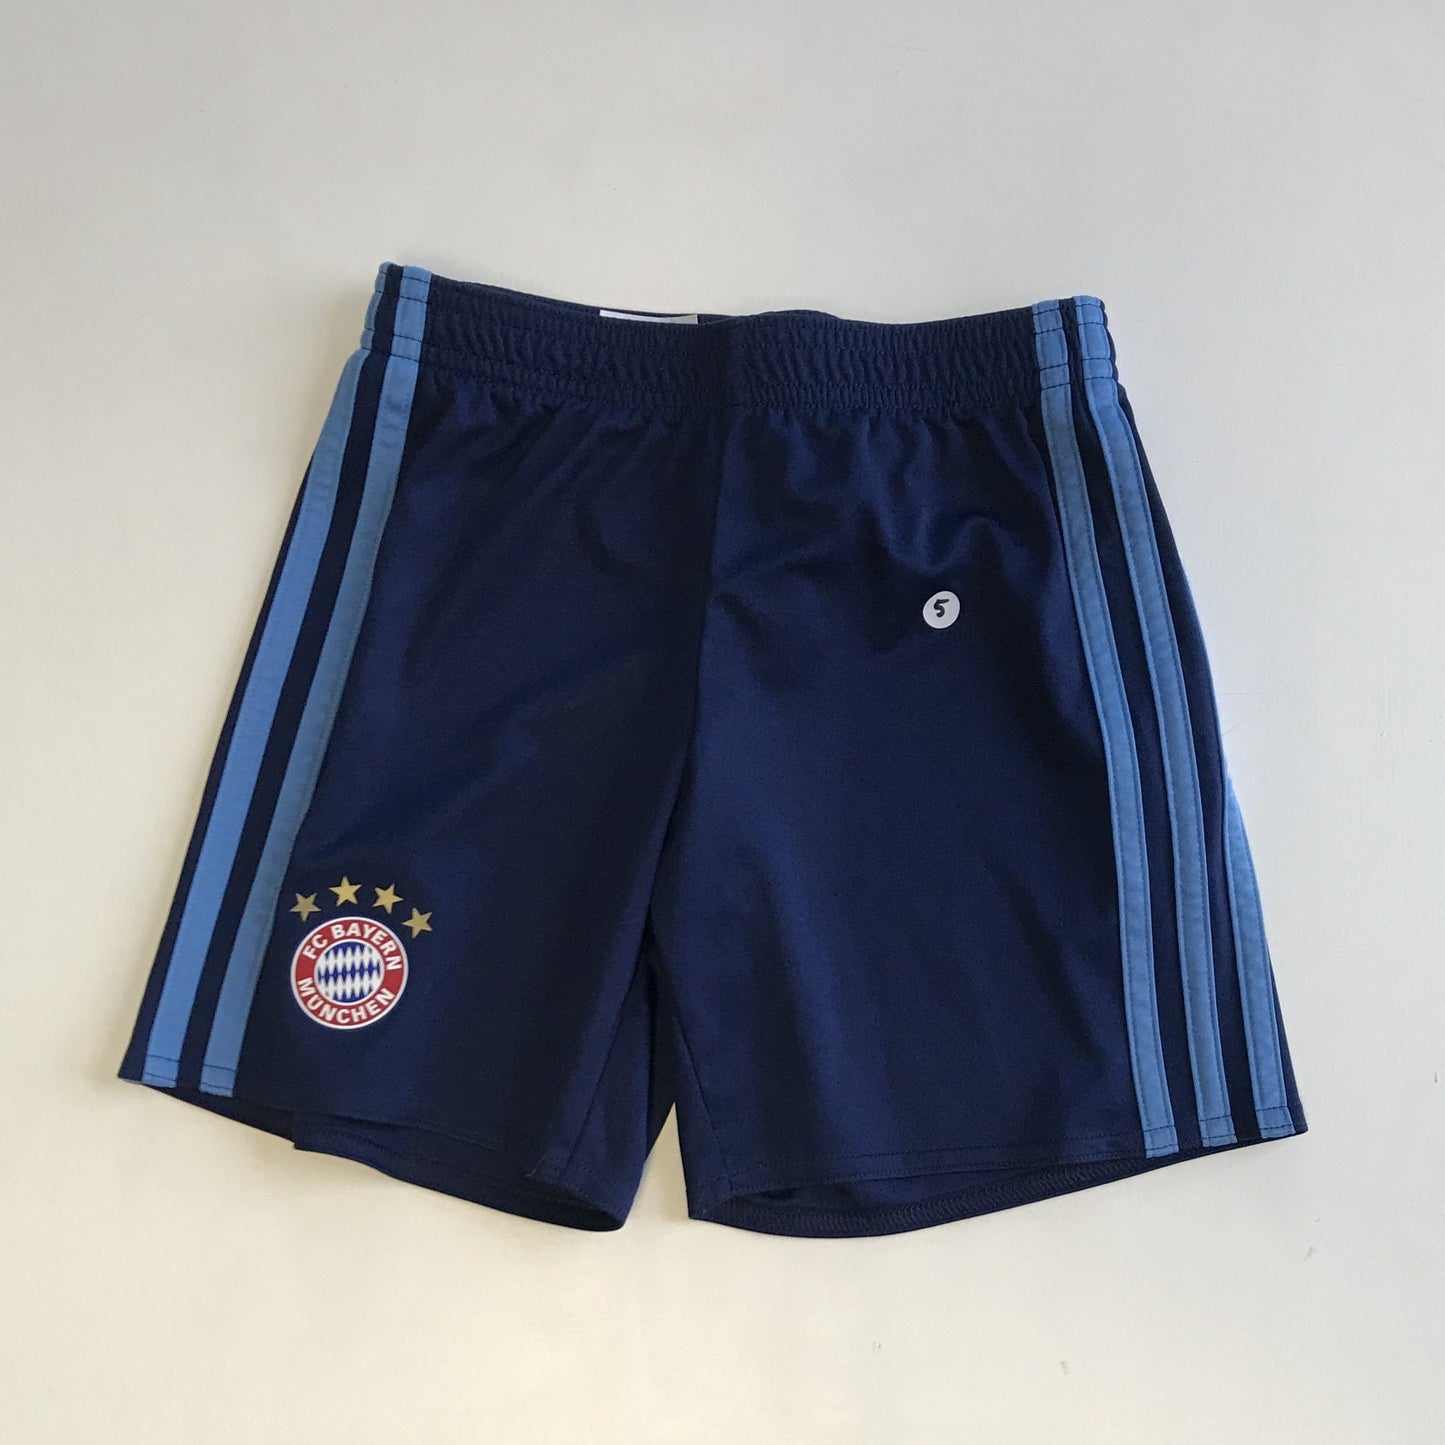 Shorts - FC Bayern Munich - Age 5